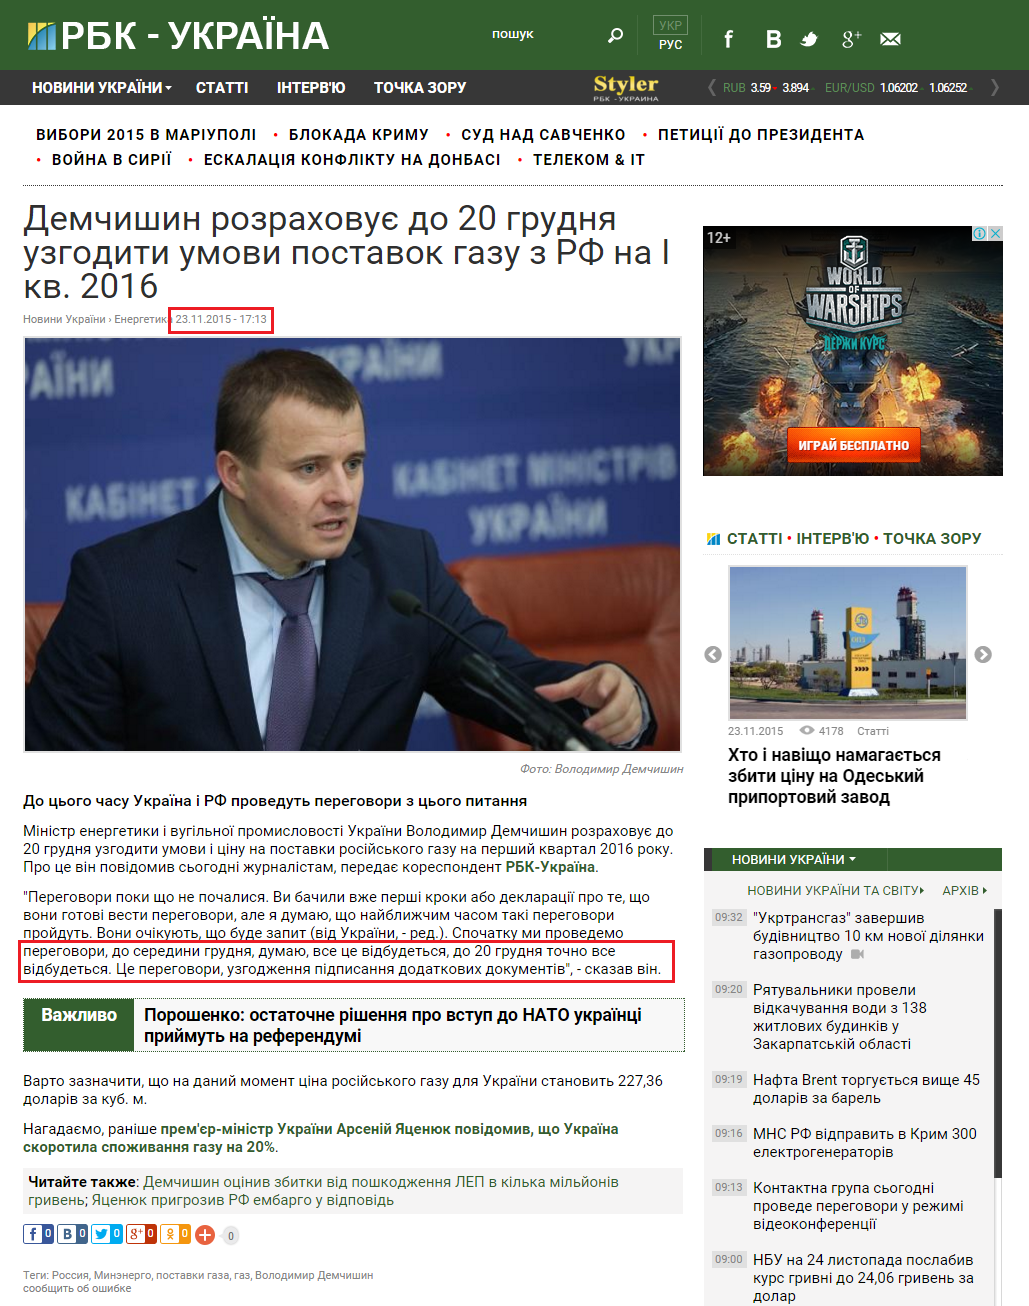 http://www.rbc.ua/ukr/news/demchishin-rasschityvaet-20-dekabrya-soglasovat-1448291631.html